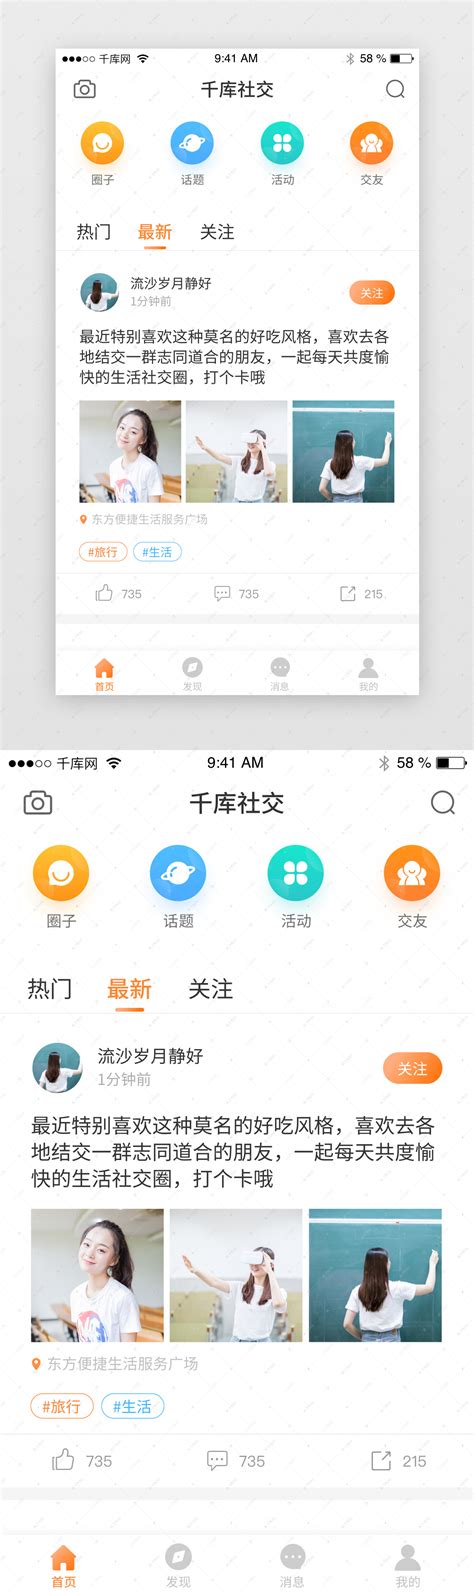 橙色社交论坛动态app首页ui界面设计素材-千库网